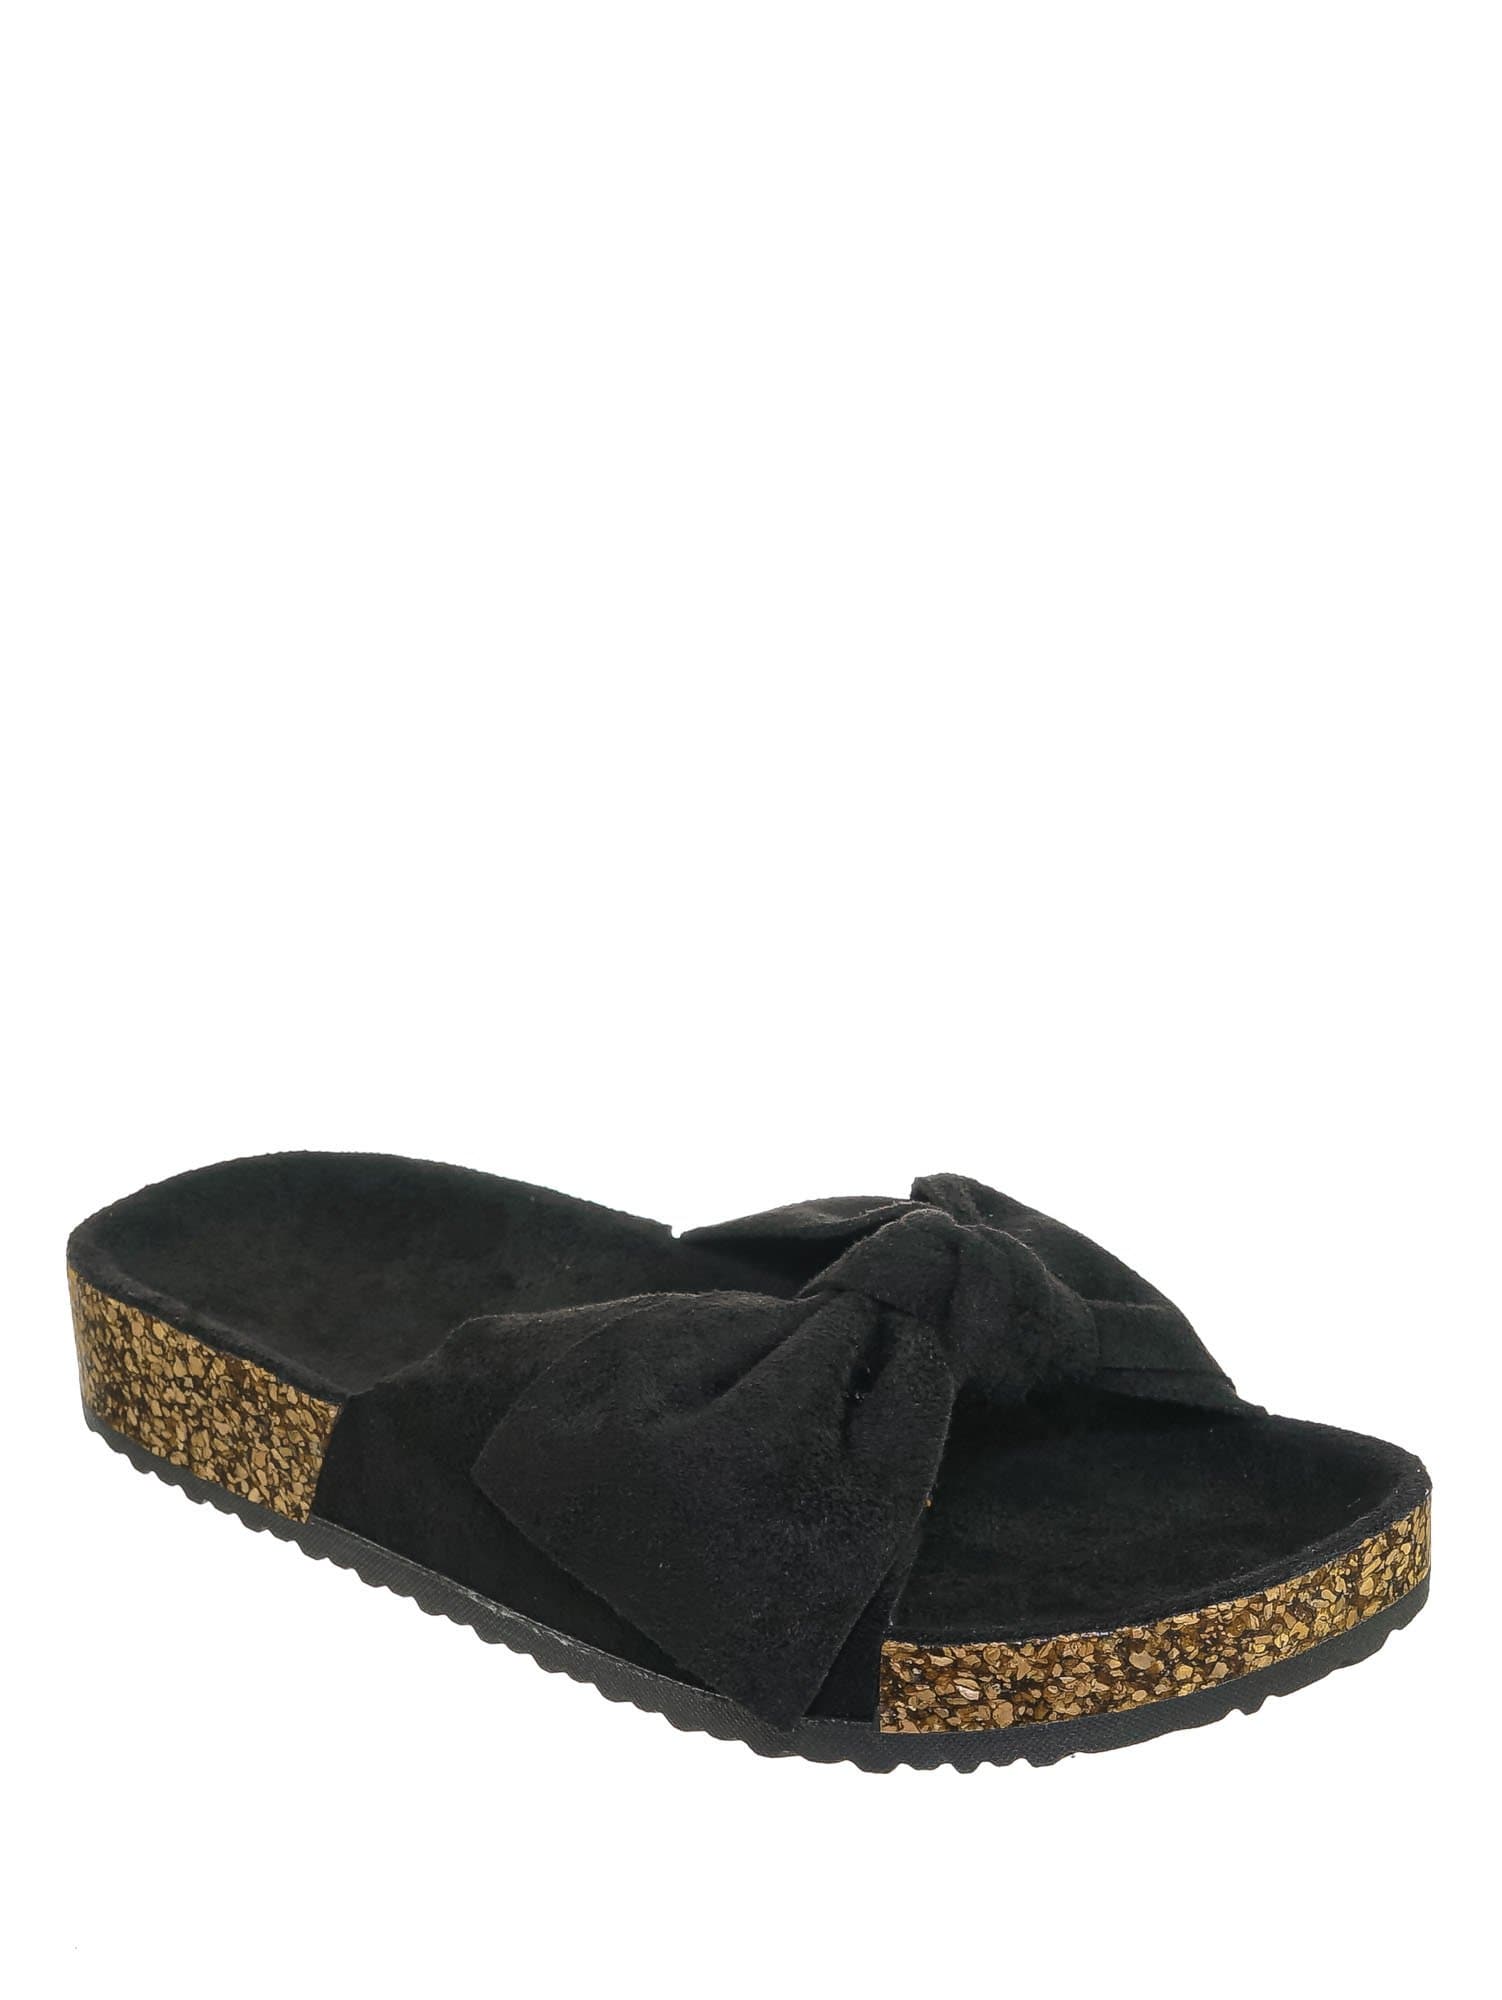 Black Fs / Berk24 Molded Footbed Slipper Sandal - Women Comfort Contour Cork Slip On Shoes